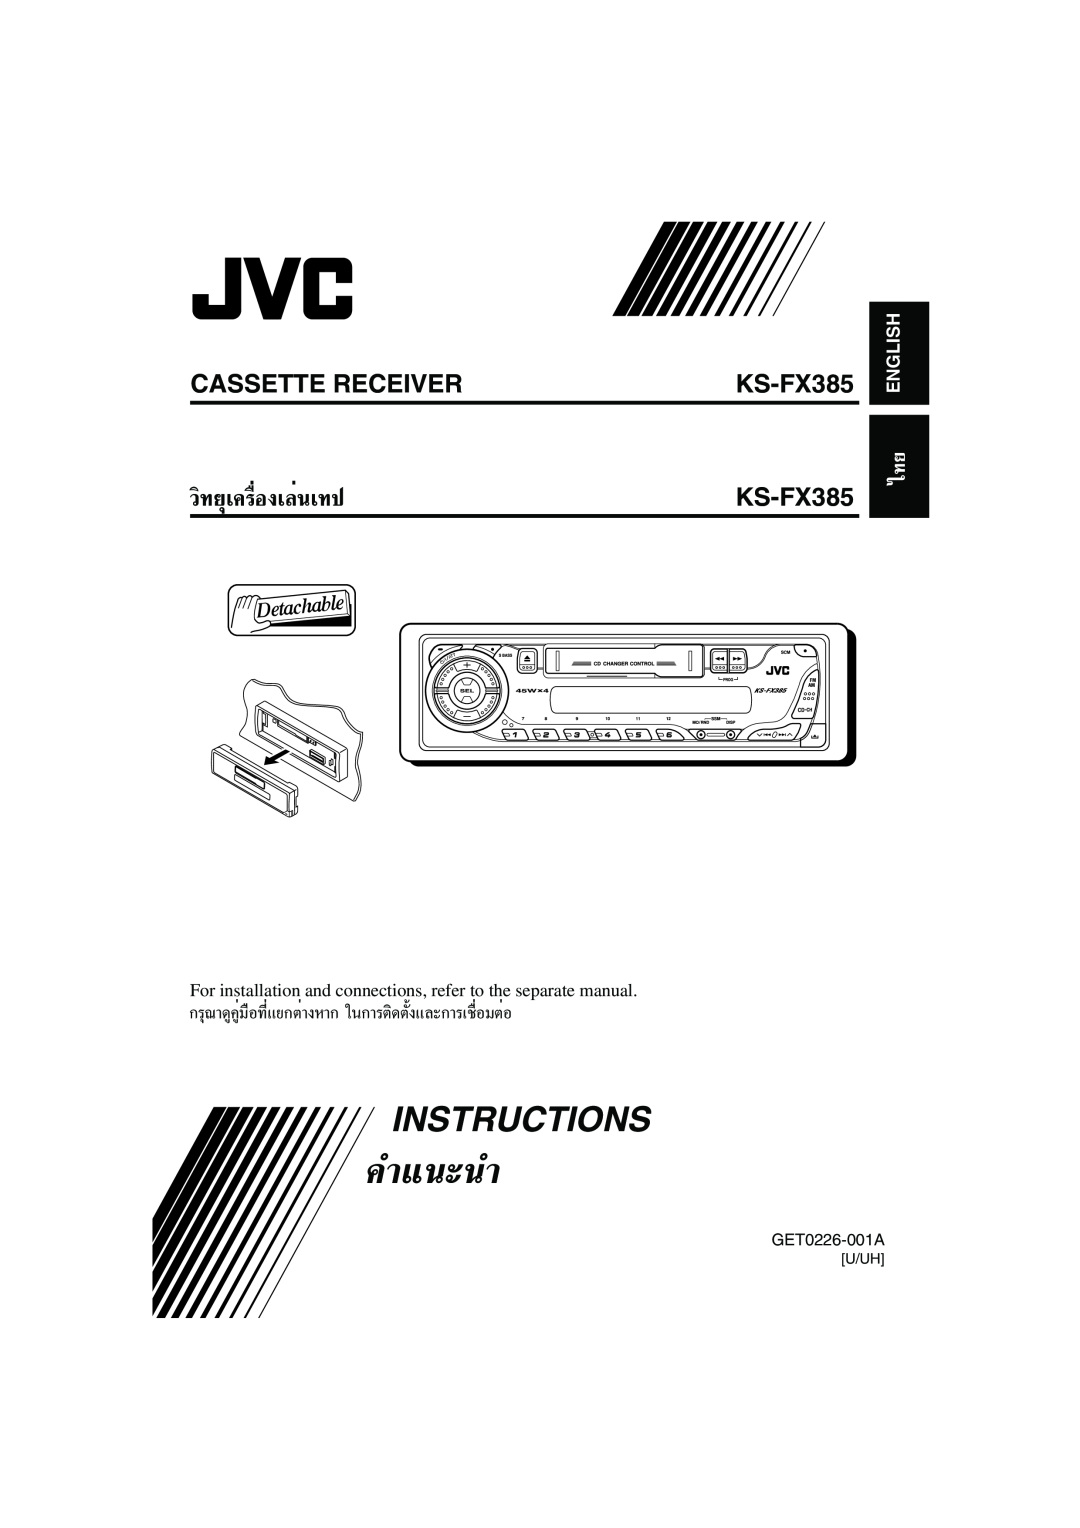 JVC KS-FX385 manual Instructions, Cassette Receiver, §”·π-π”, «‘∑¬ÿ‡§√ËÕß‡≈Ëπ‡∑ª, English 